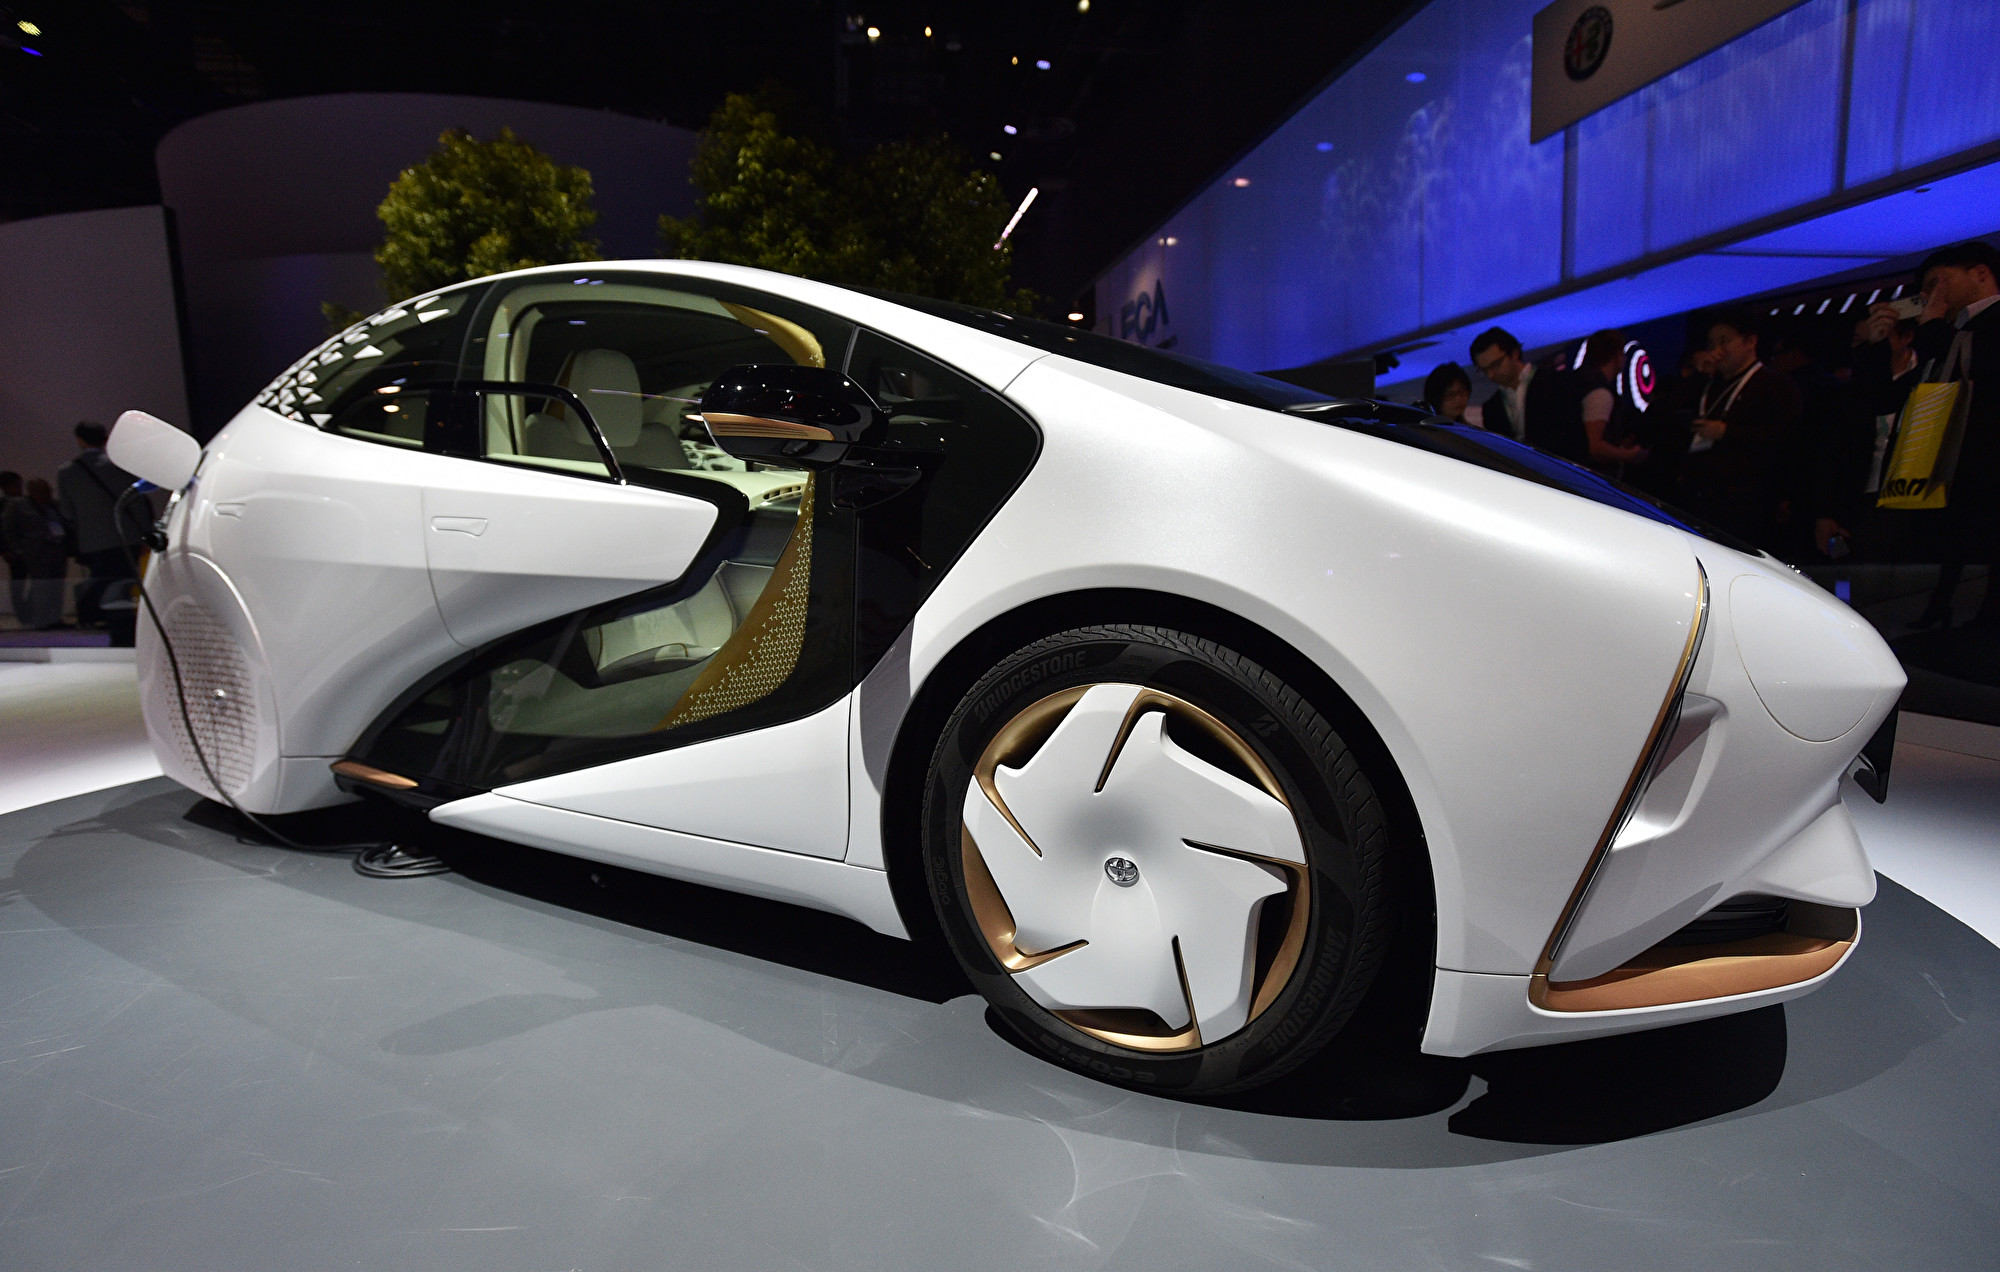 組圖 代表未來潮流的11款靚車令人驚豔 Ces 消費電子展 大紀元